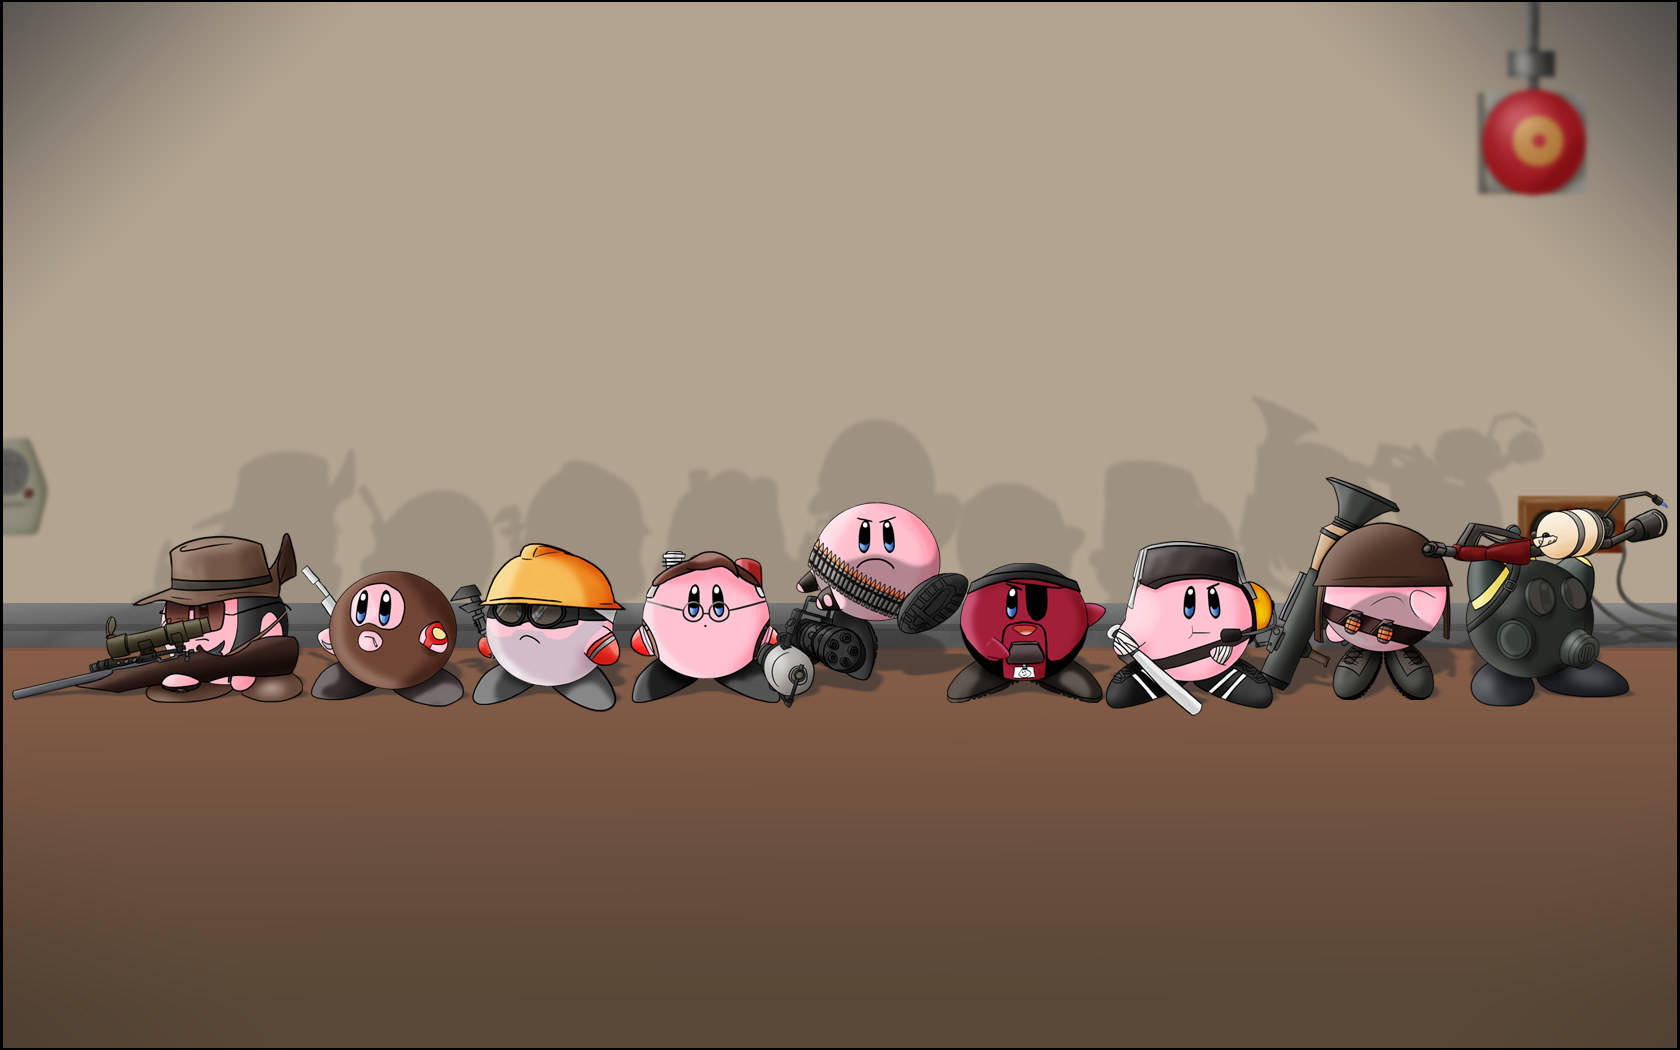 Team Fortress 2 Kirby Fanart Tapet: En farverig blanding af Kirby-figurer og motiver inspireret af Team Fortress 2. Wallpaper